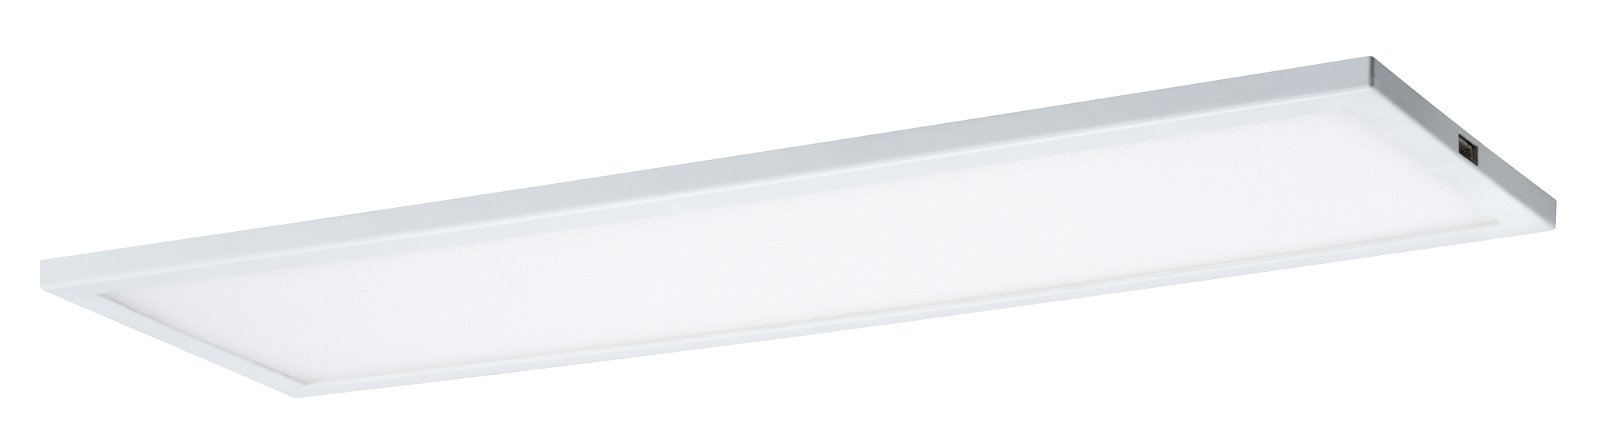 LED Unterschrankleuchte Ace 300x7mm 520lm 2700K Weiß/Satin dimmbar